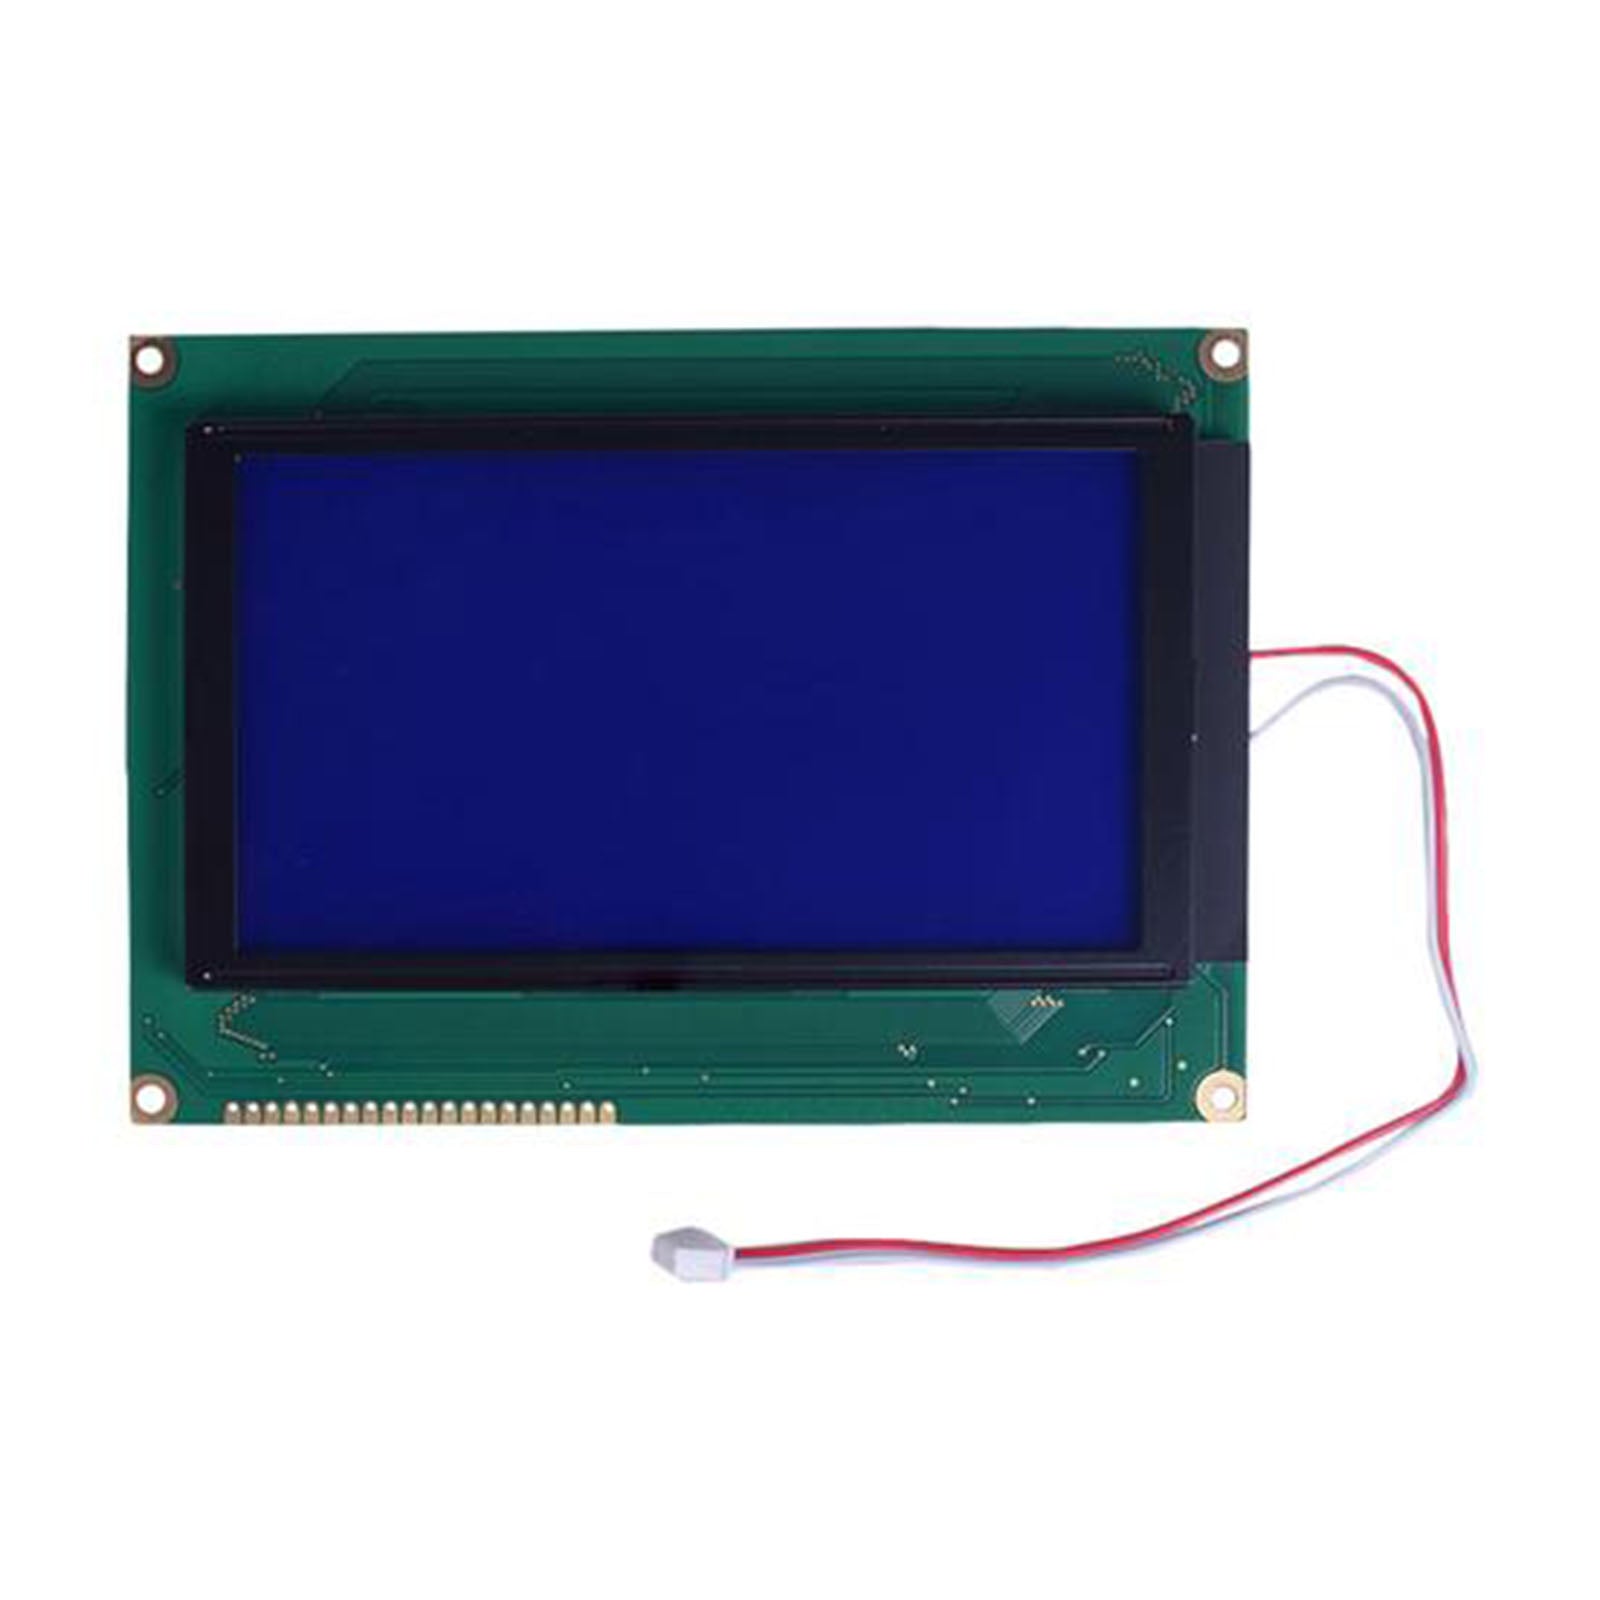 DisplayModule 5.15" 240x128 Graphic LCD - MCU